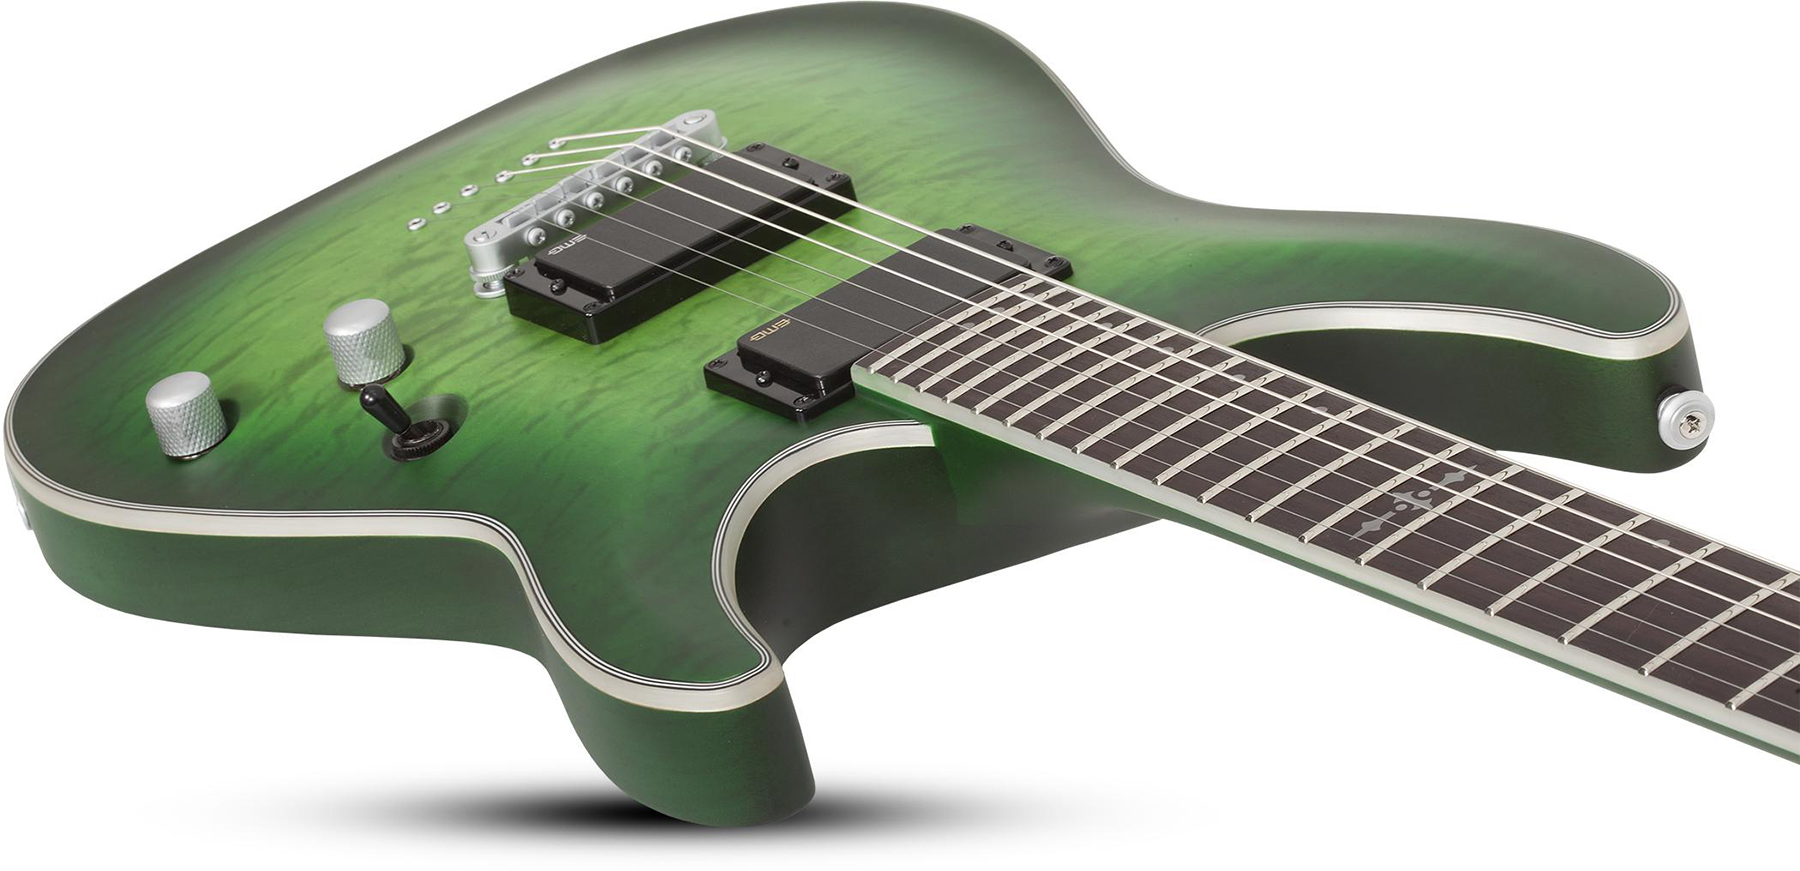 Schecter C-1 Platinum 2h Emg Ht Eb - Satin Green Burst - Str shape electric guitar - Variation 2